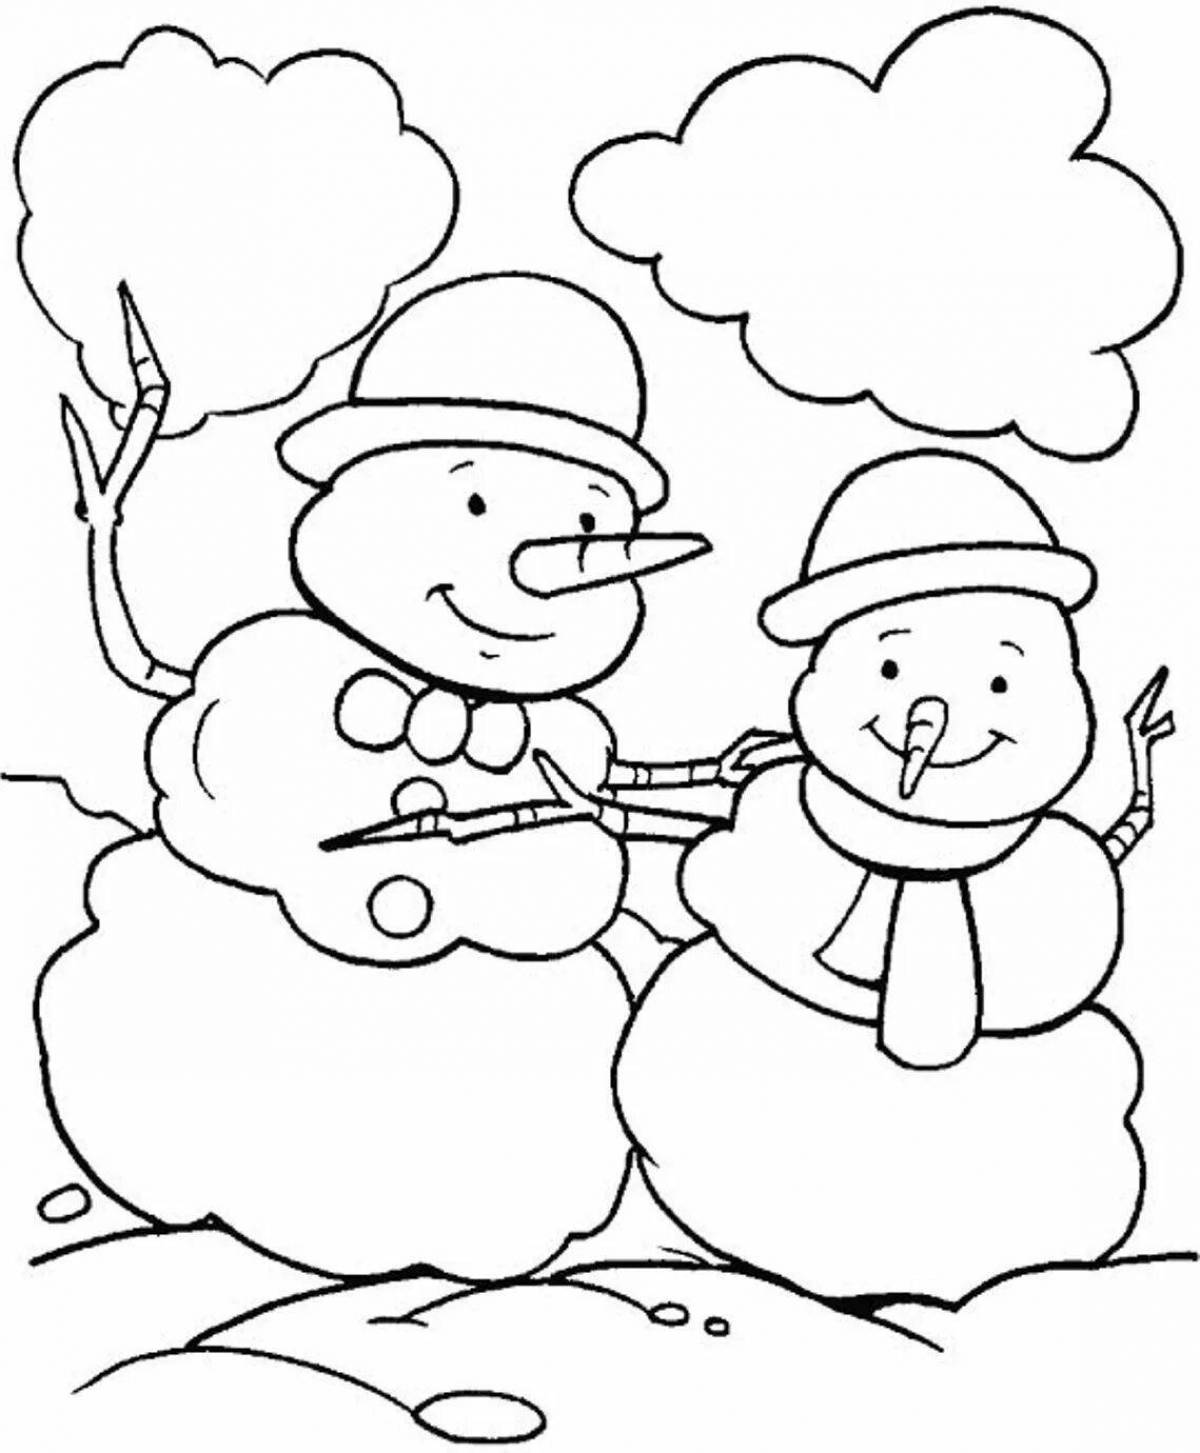 Захватывающий рисунок снеговика для детей